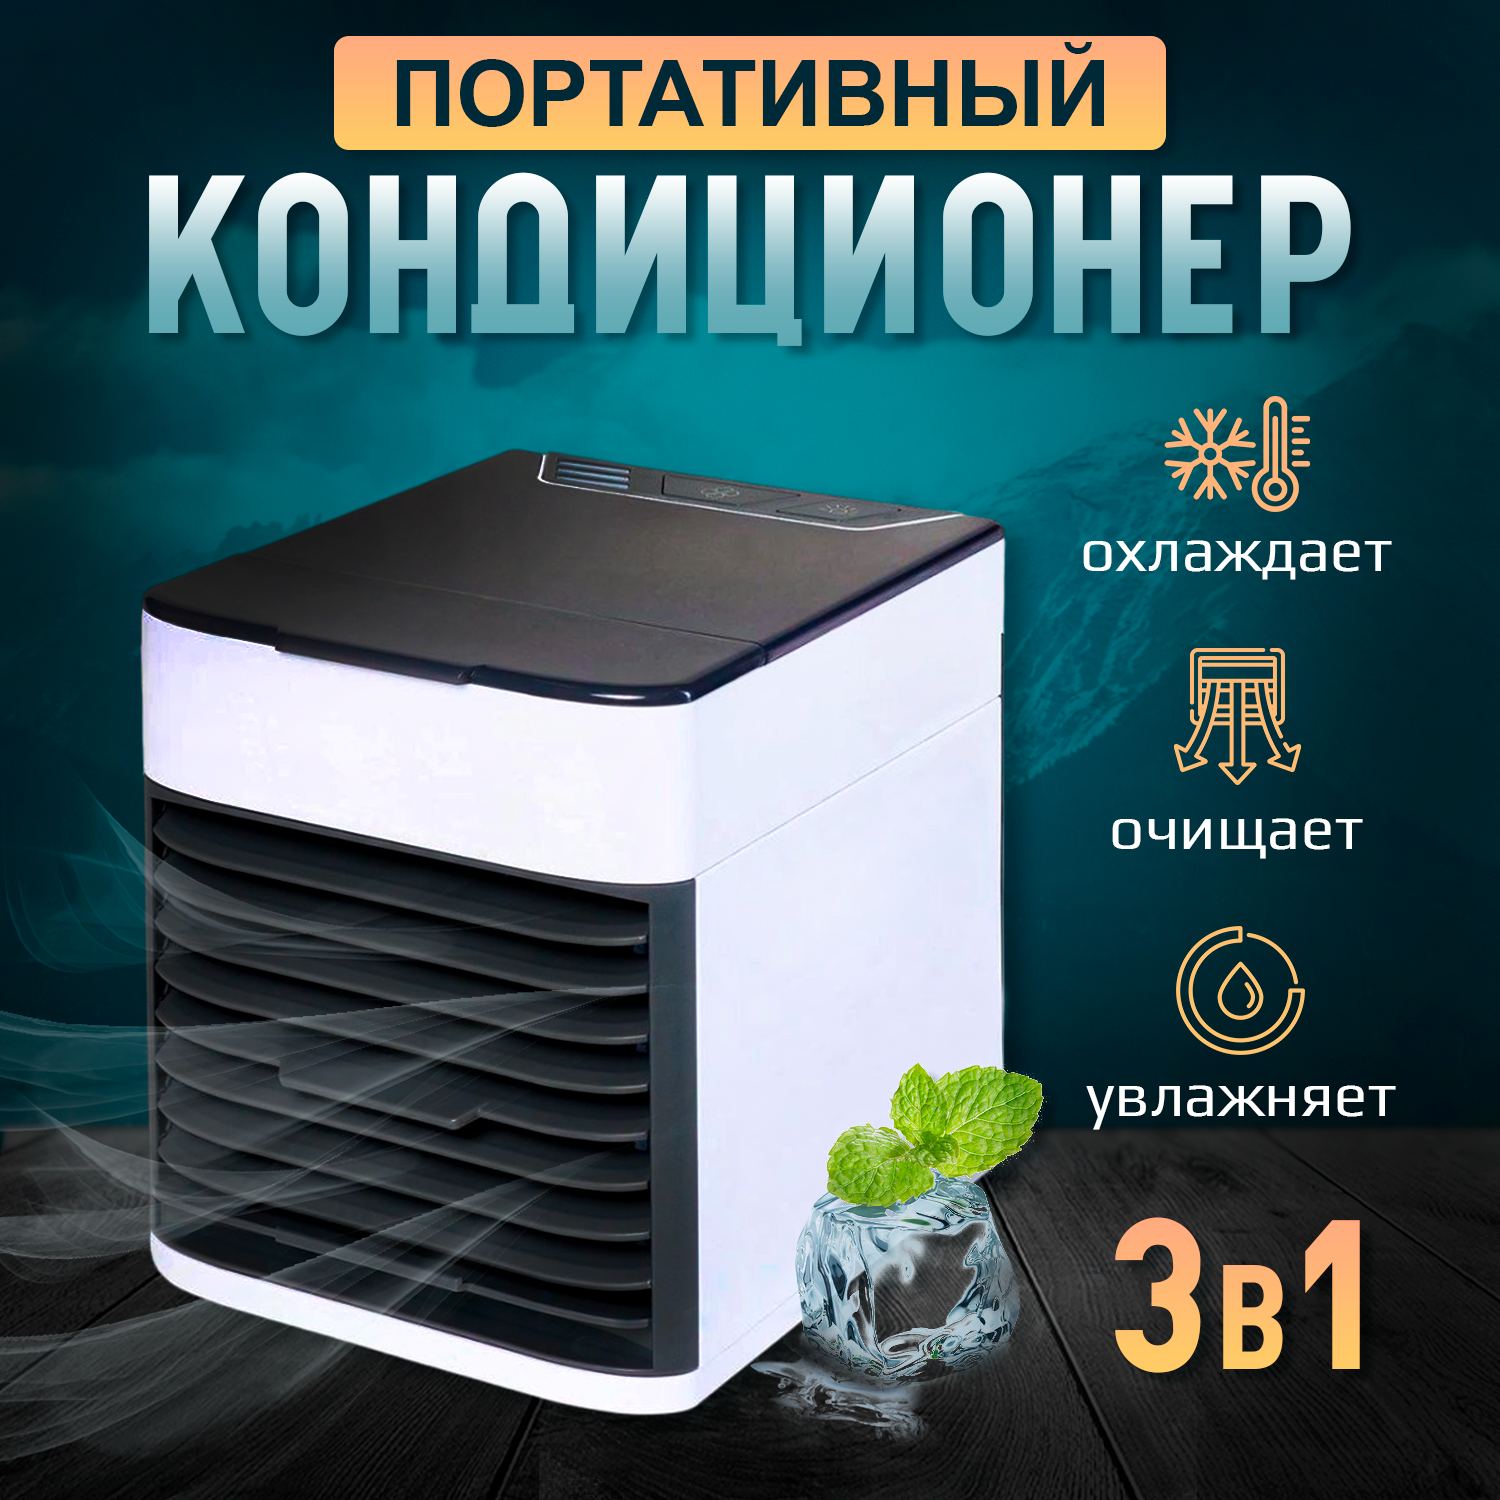 Кондиционер мобильный HOMESTYLE AM-353 белый, купить в Москве, цены в интернет-магазинах на Мегамаркет